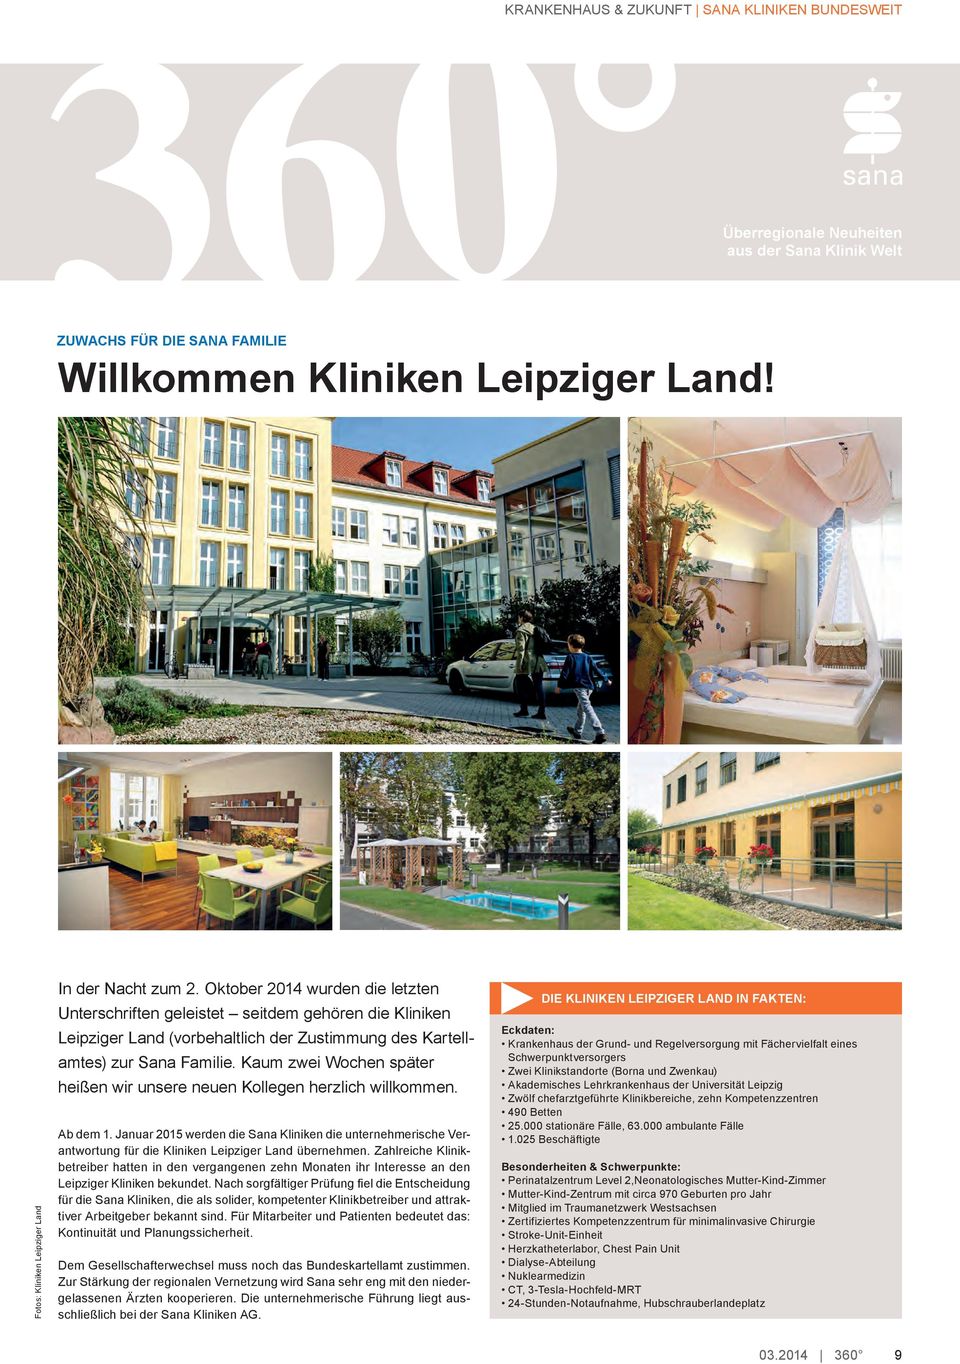 Oktober 2014 wurden die letzten Unterschriften geleistet seitdem gehören die Kliniken Leipziger Land (vorbehaltlich der Zustimmung des Kartellamtes) zur Sana Familie.